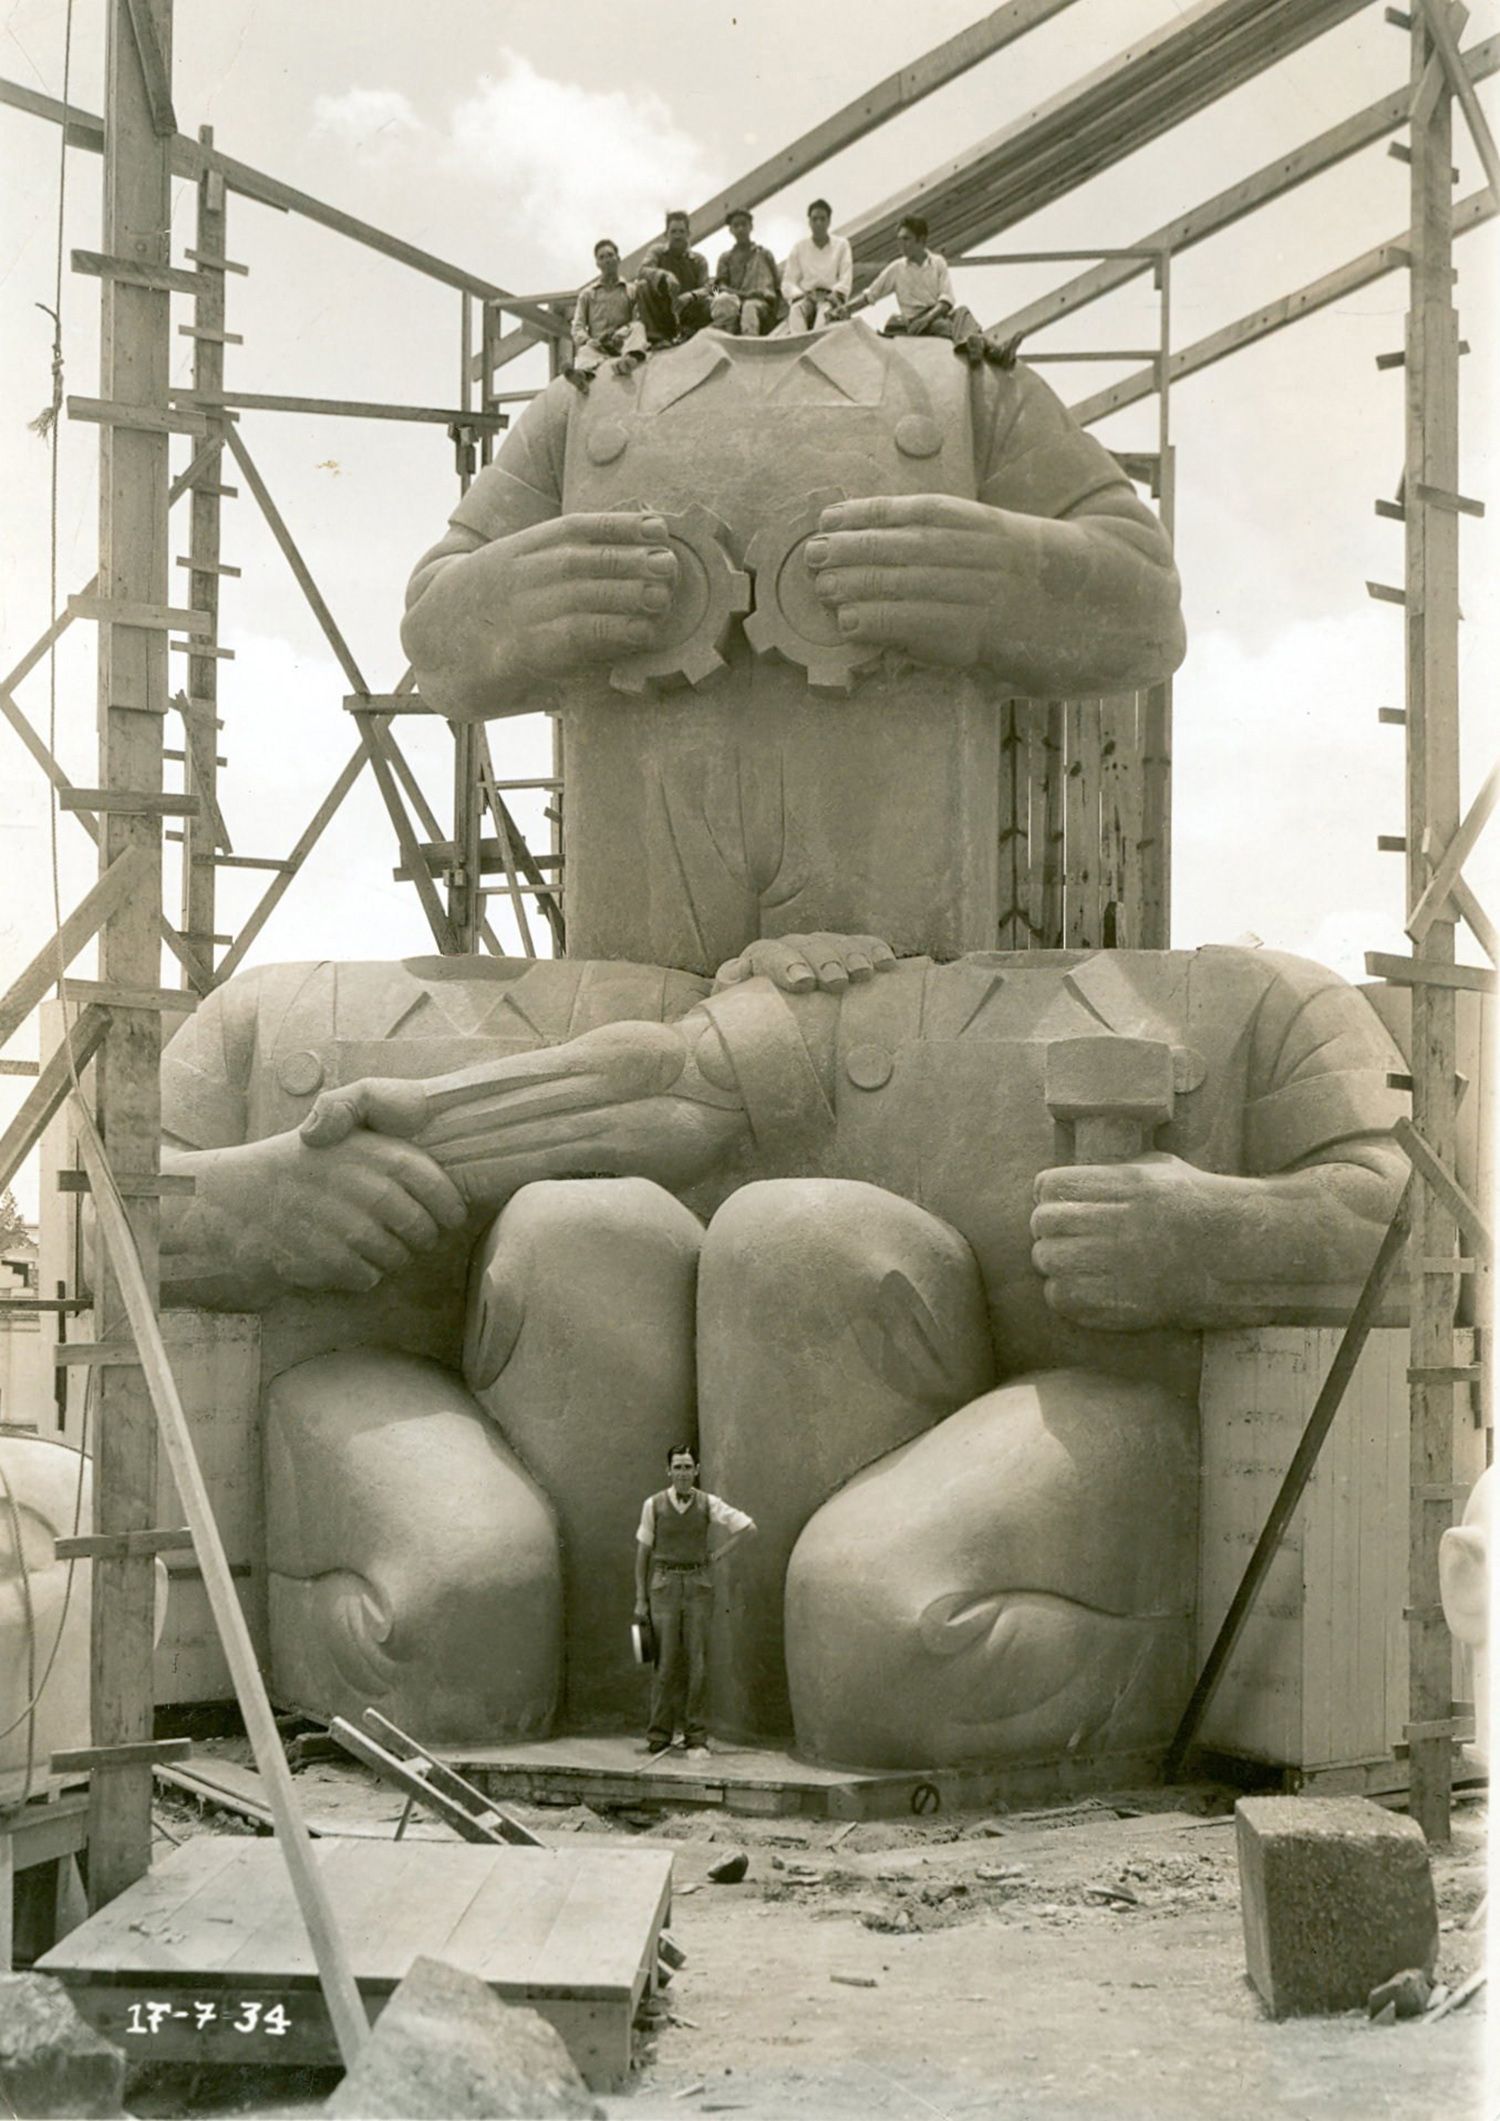 Lanzamiento del libro "MONUMENTAL: La dimensión pública de la escultura 1927-1979" de Pedro Reyes